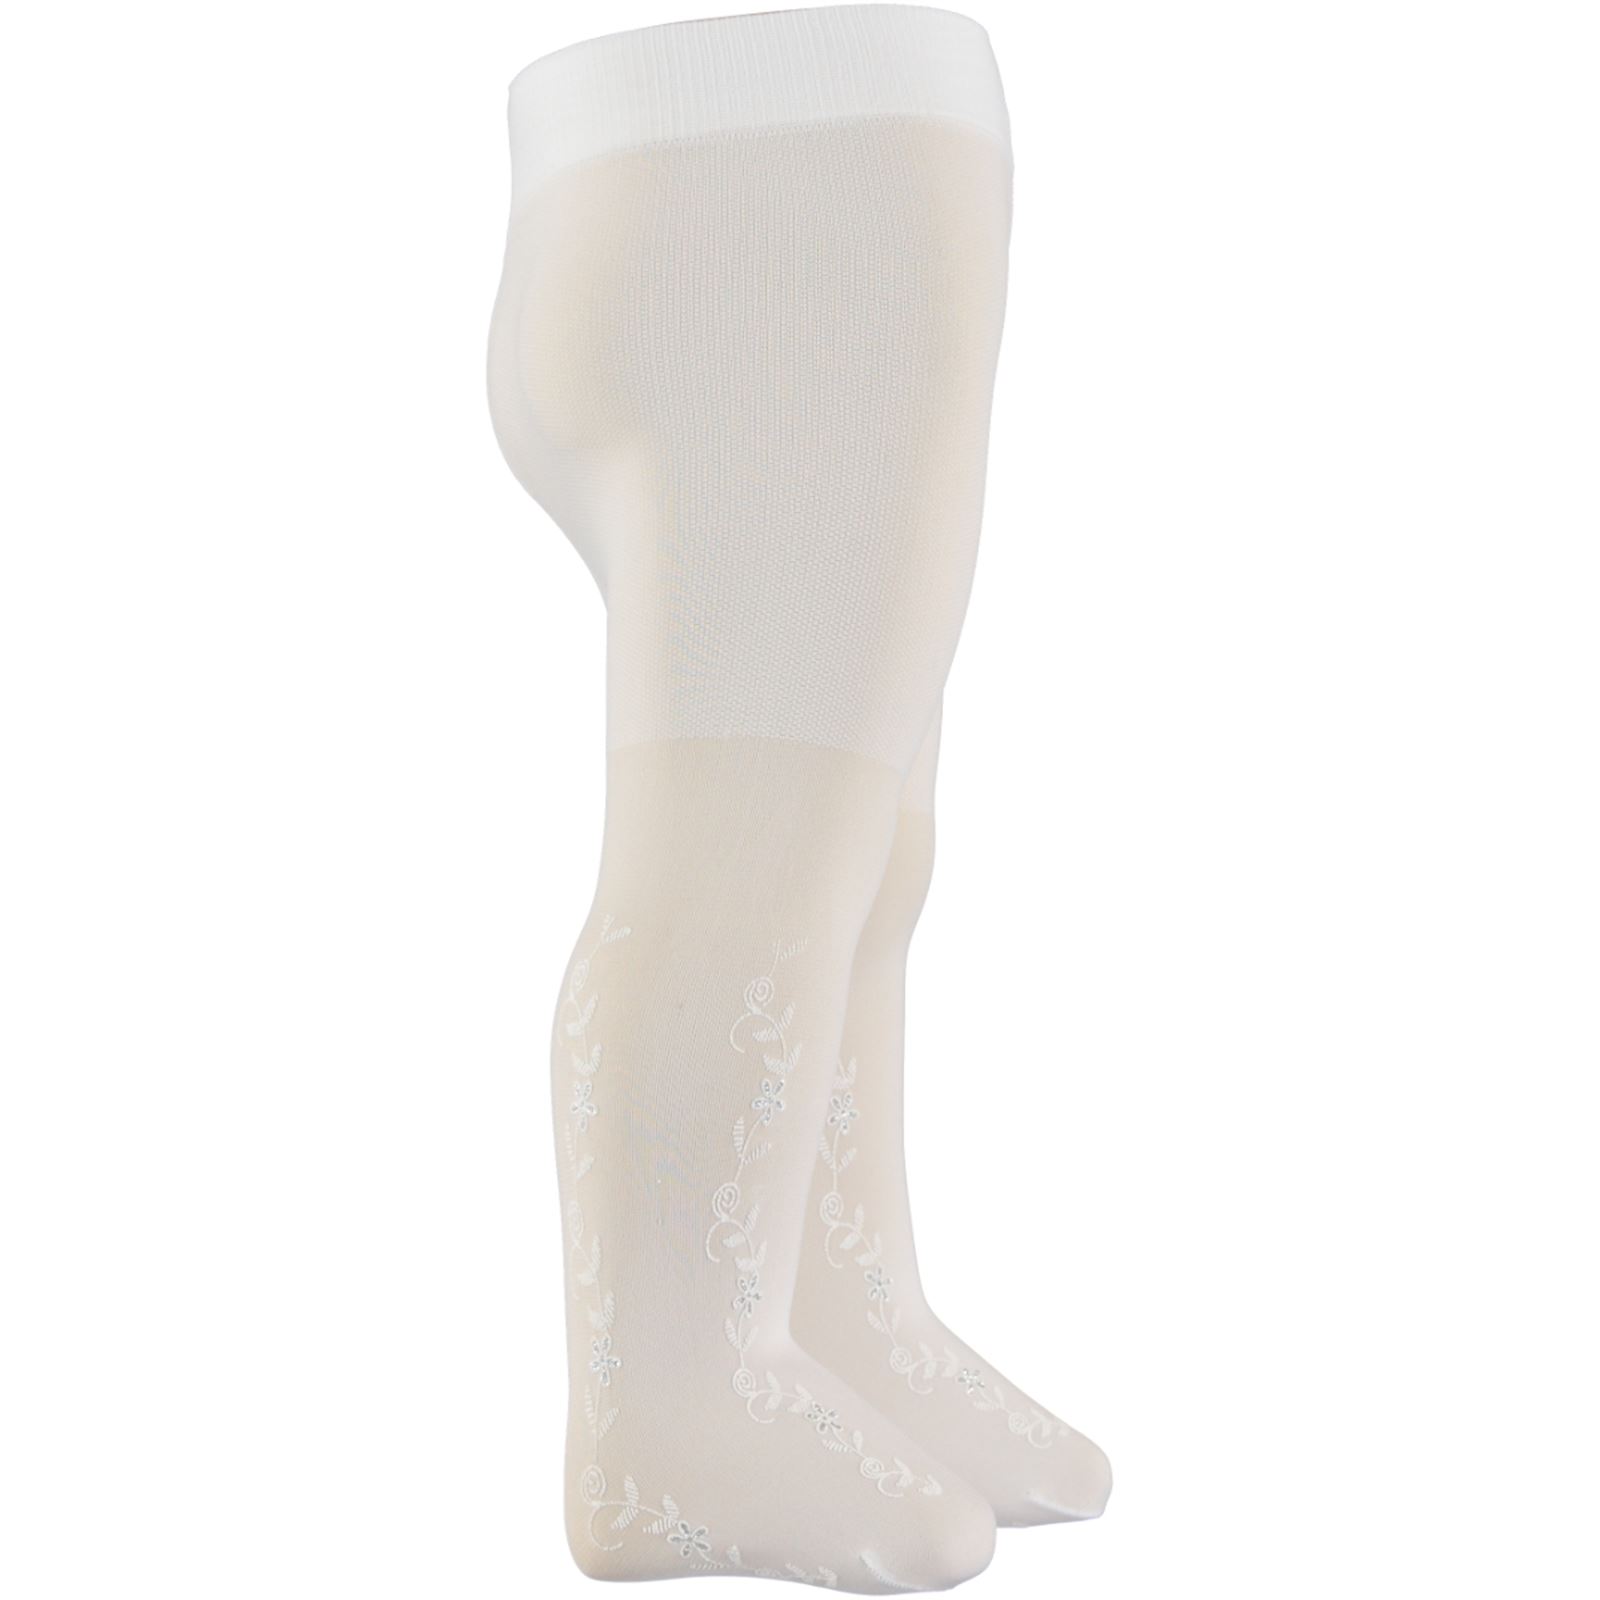 Bella Calze Külotlu Çorap 0-24 Ay Beyaz